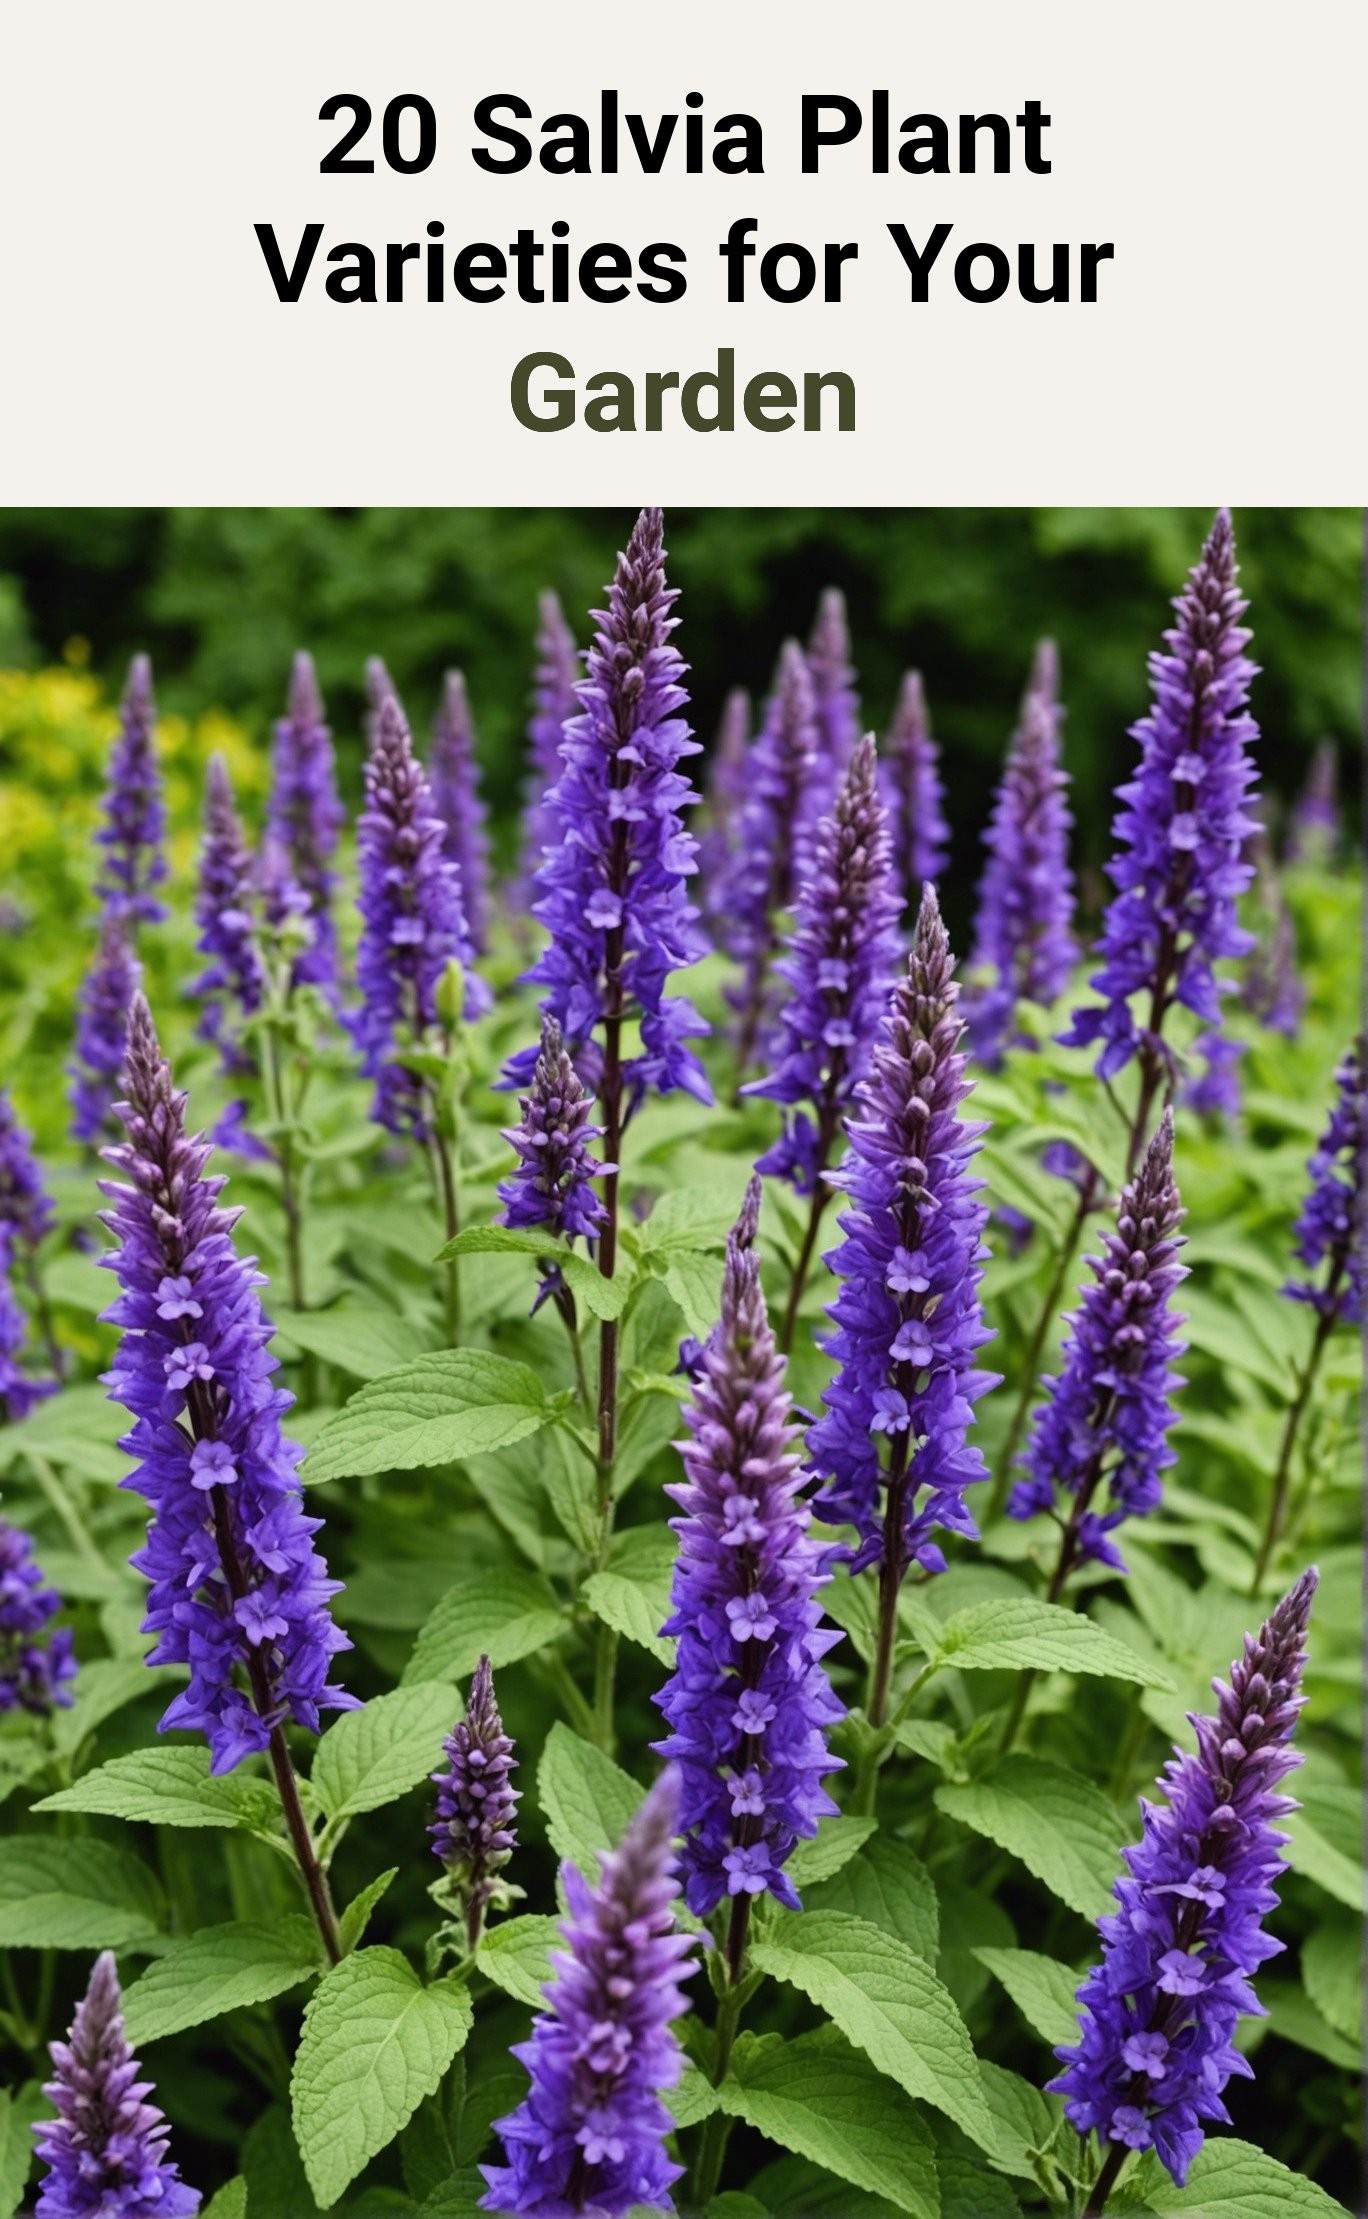 20 Salvia Plant Varieties for Your Garden